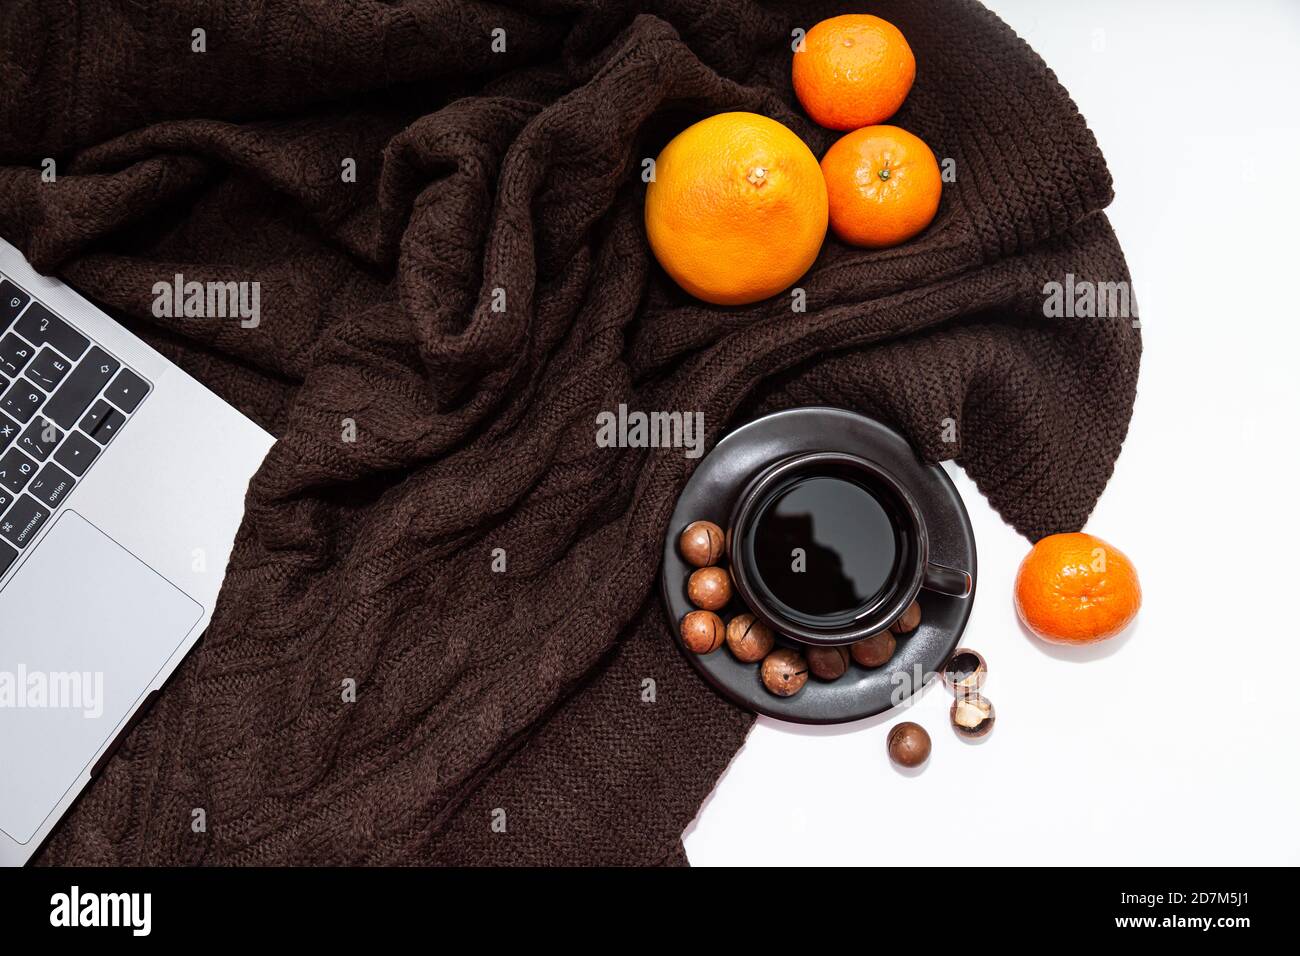 Ambiance chaleureuse. Ordinateur portable, tasse de café avec mandarines et noix sur fond de couverture tricoté marron Banque D'Images